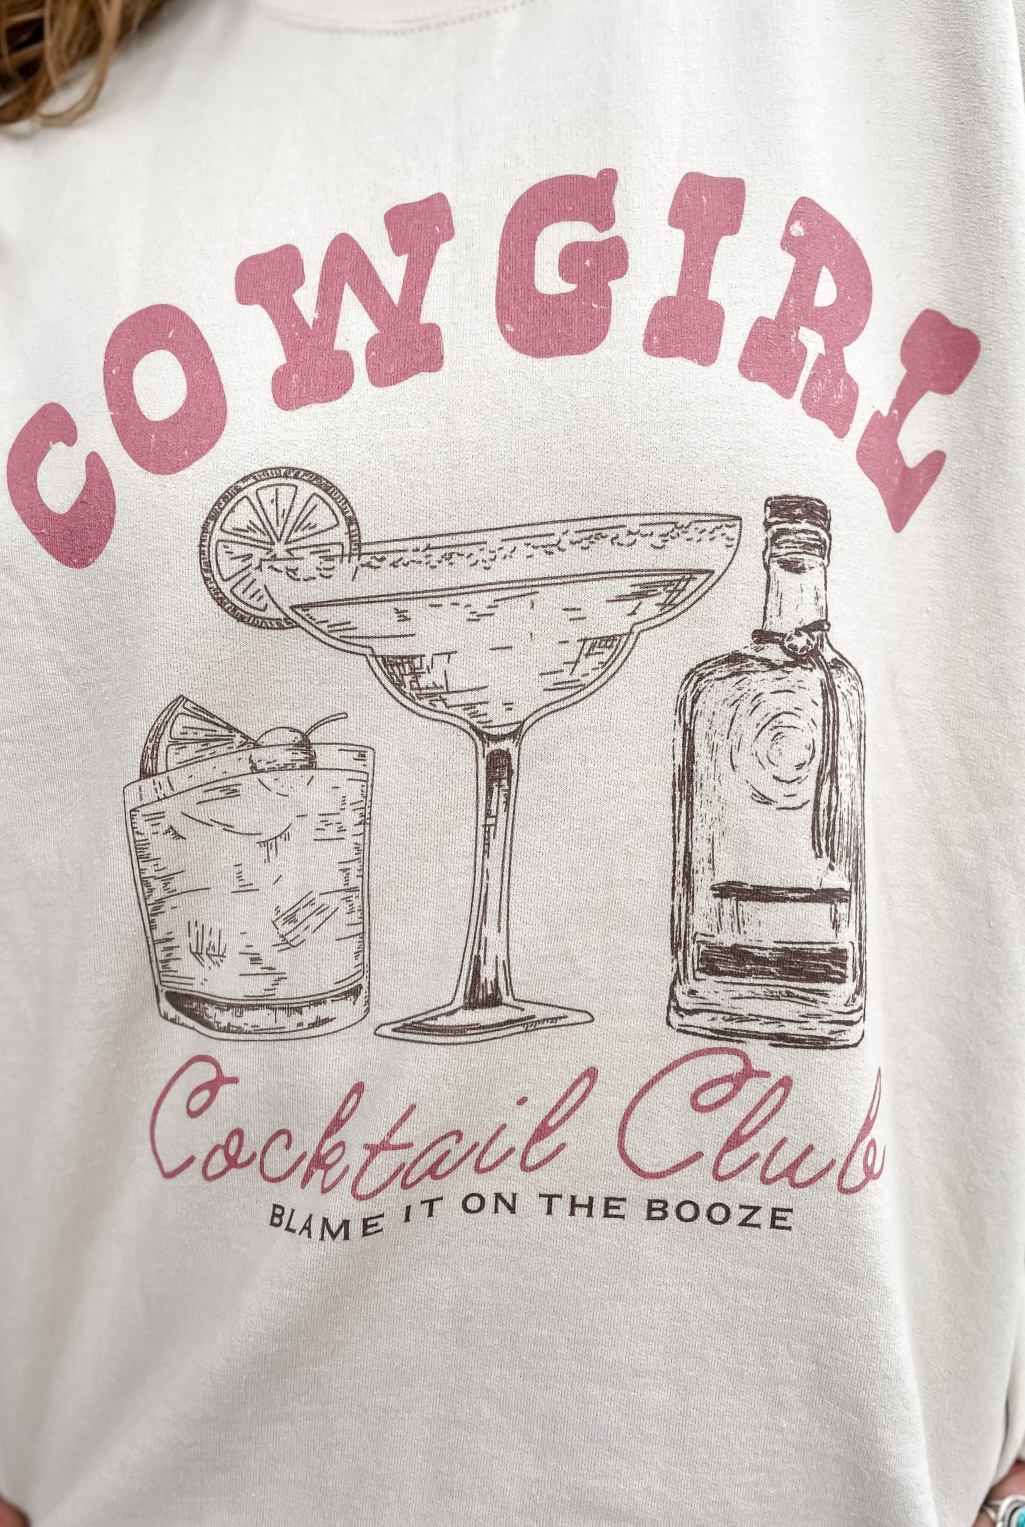 Cowgirl Cocktail Club Sweatshirt